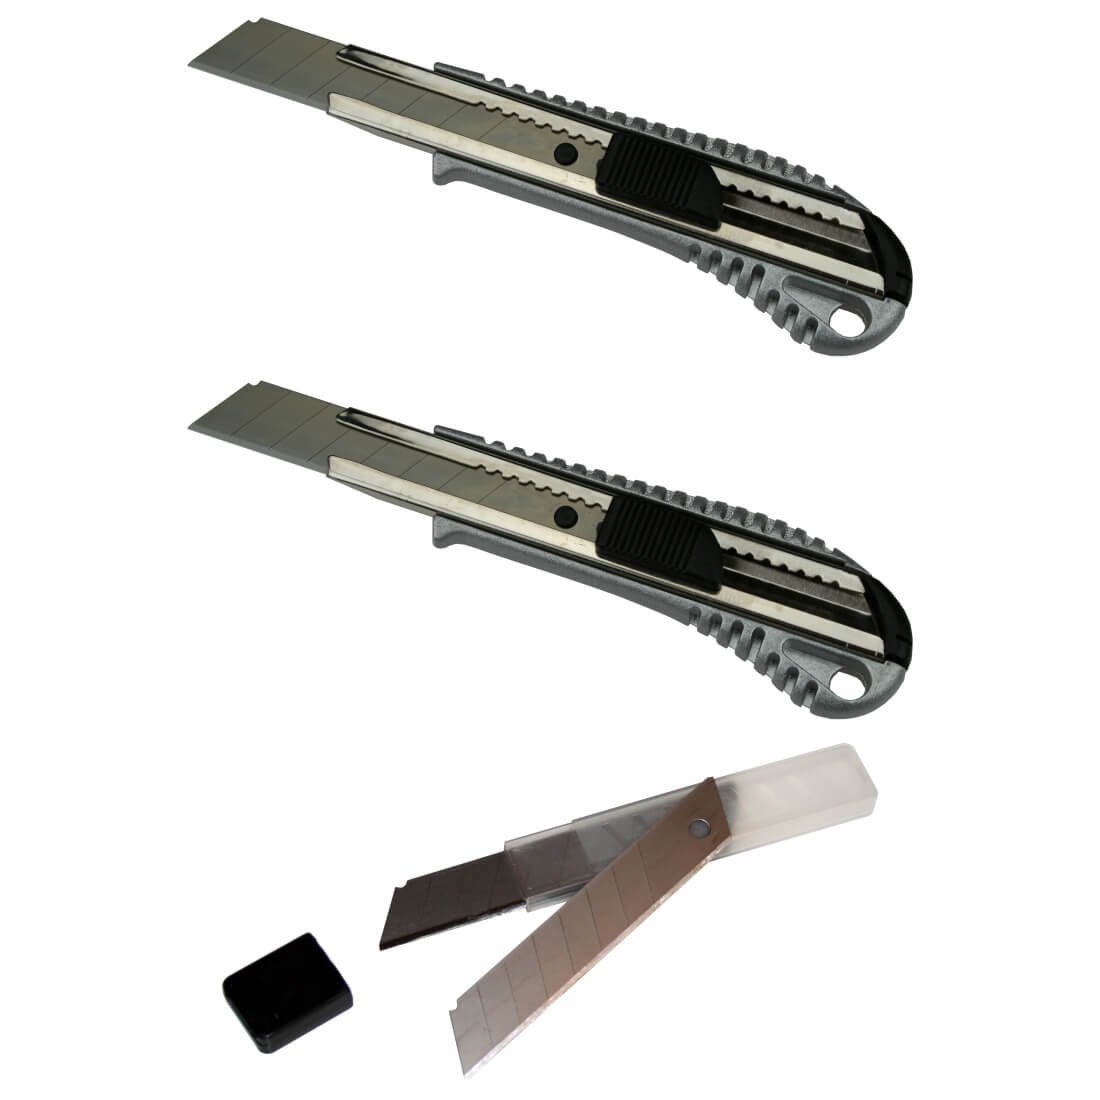 peveha24 Cuttermesser 2 Cuttermesser 18mm + 10 Cutter Abbrechklingen im Köcher